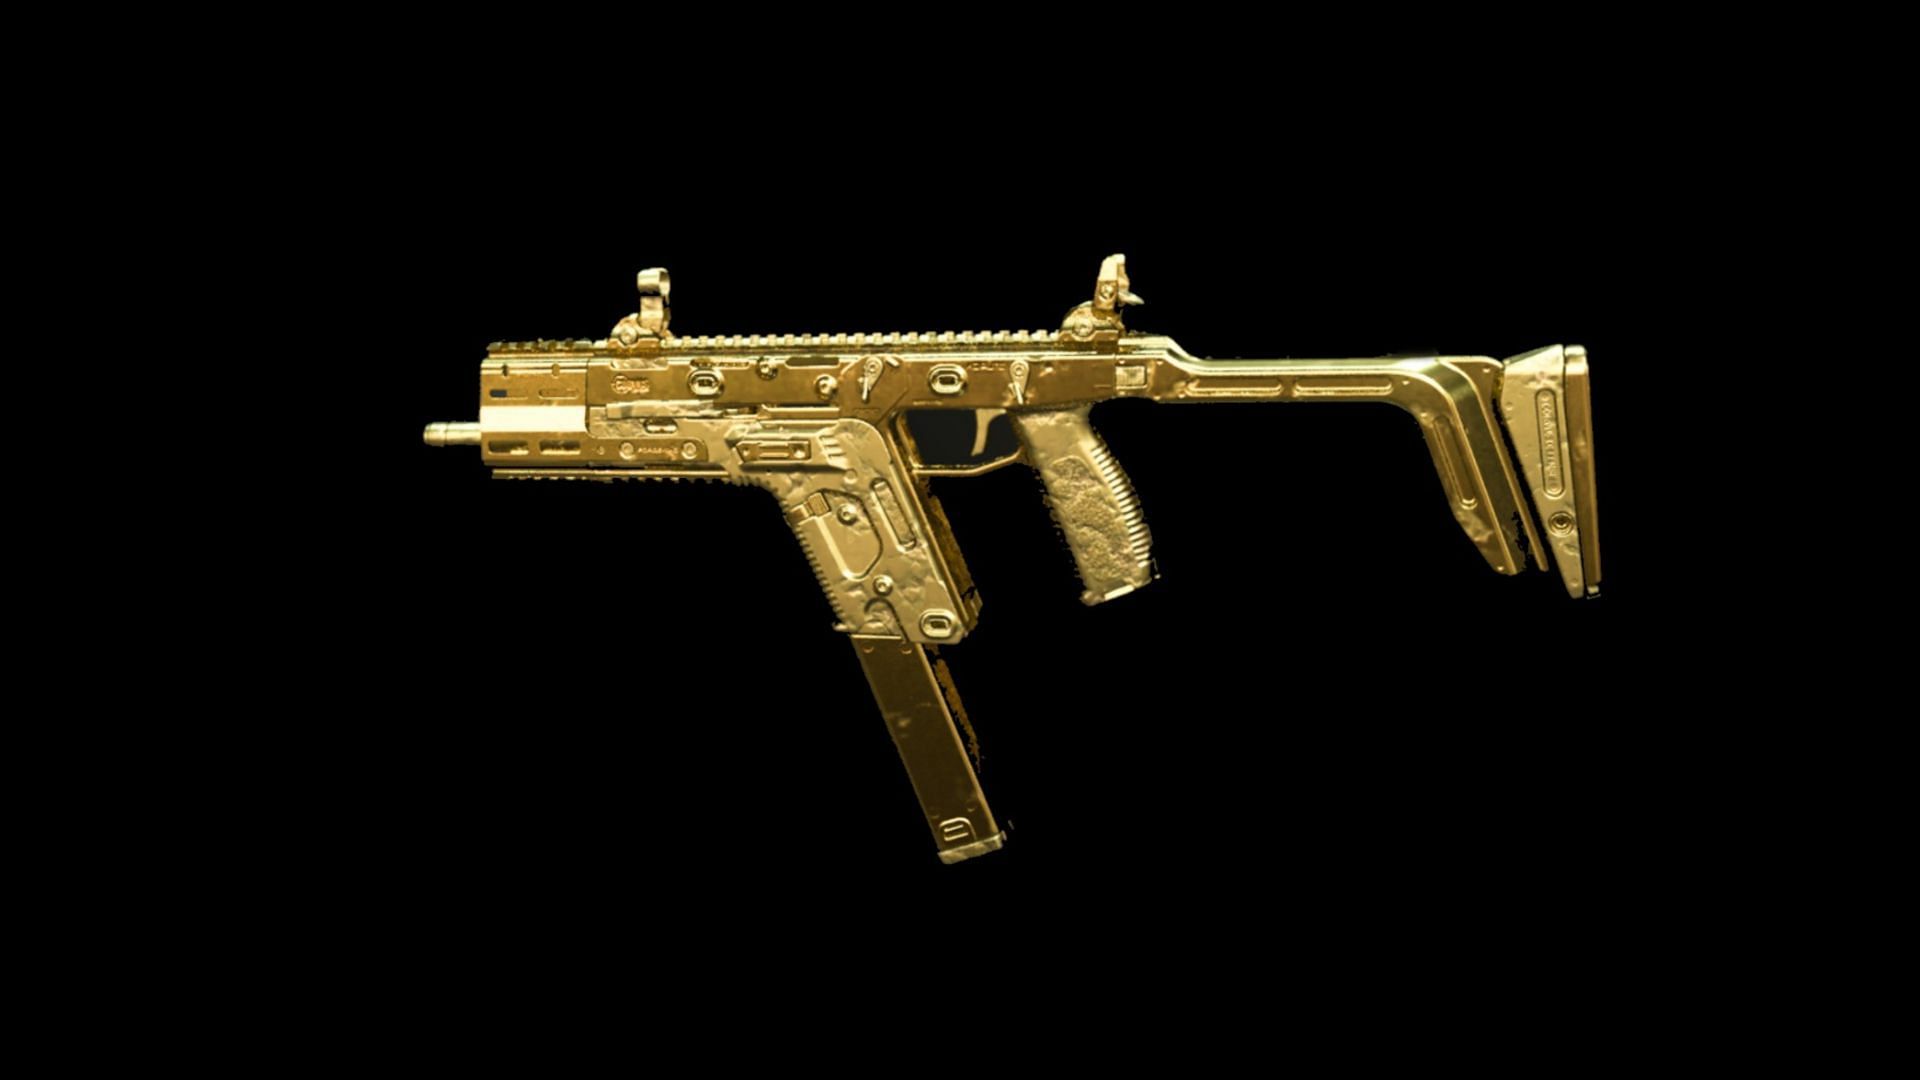 The Fennec 45 submachine gun (Image via Activision)